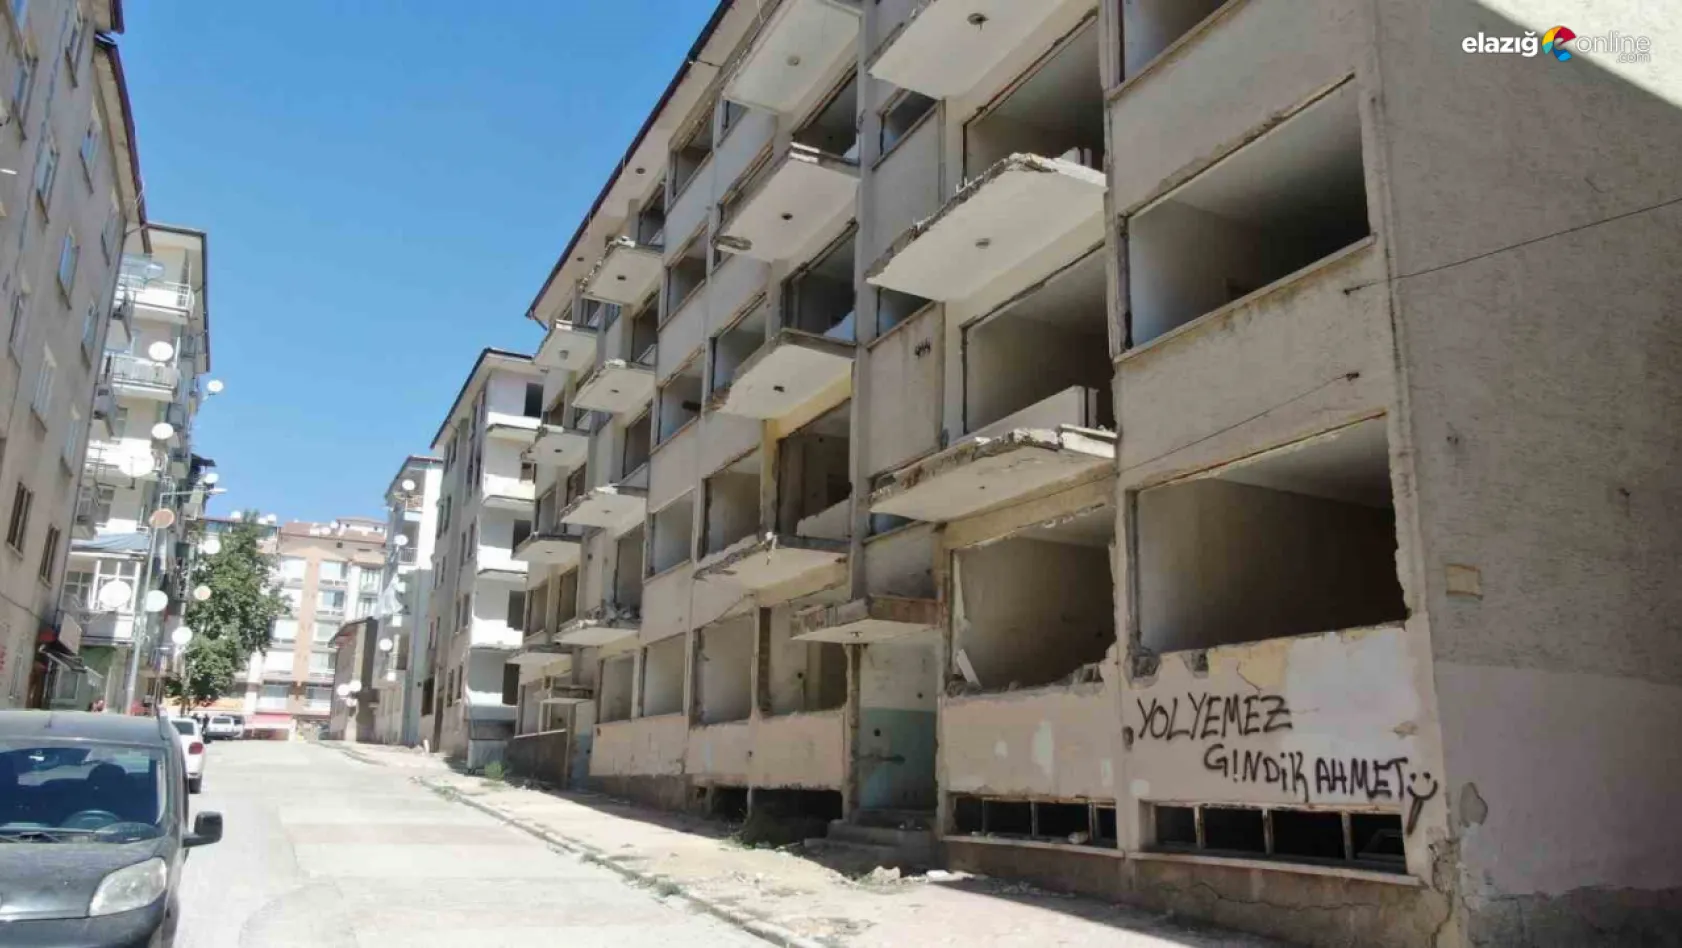 Elazığ'da önlem alınmayan binalar tehlike saçıyor!